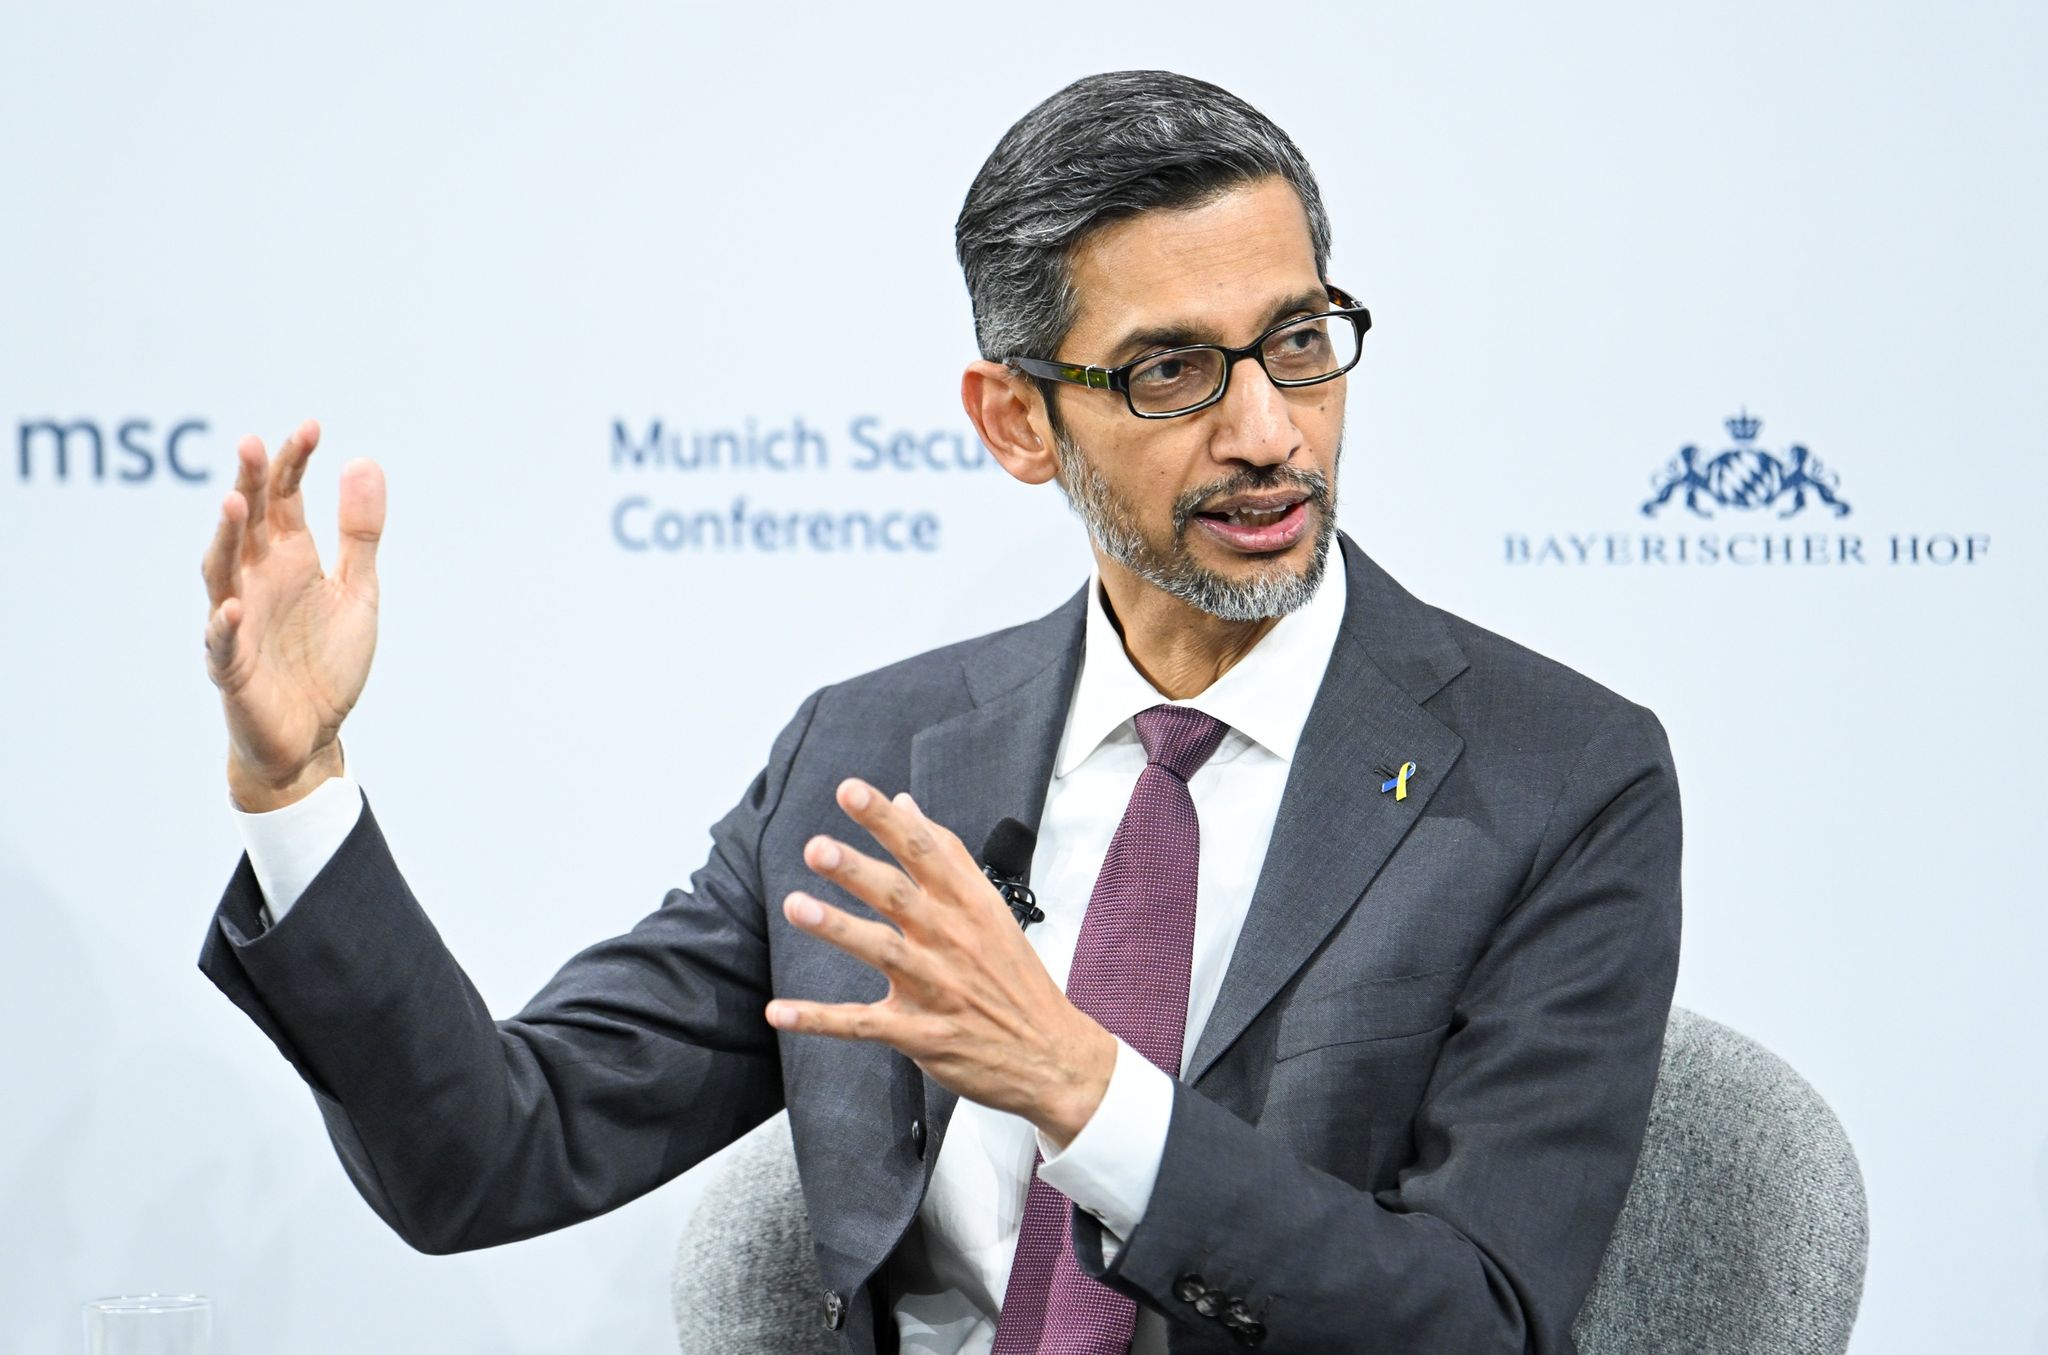 Google-Chef Sundar Pichai nimmt an der Münchner Sicherheitskonferenz teil. Tech-Giganten haben ein Abkommen gegen Wahlmanipulationen durch Künstliche Intelligenz geschlossen.